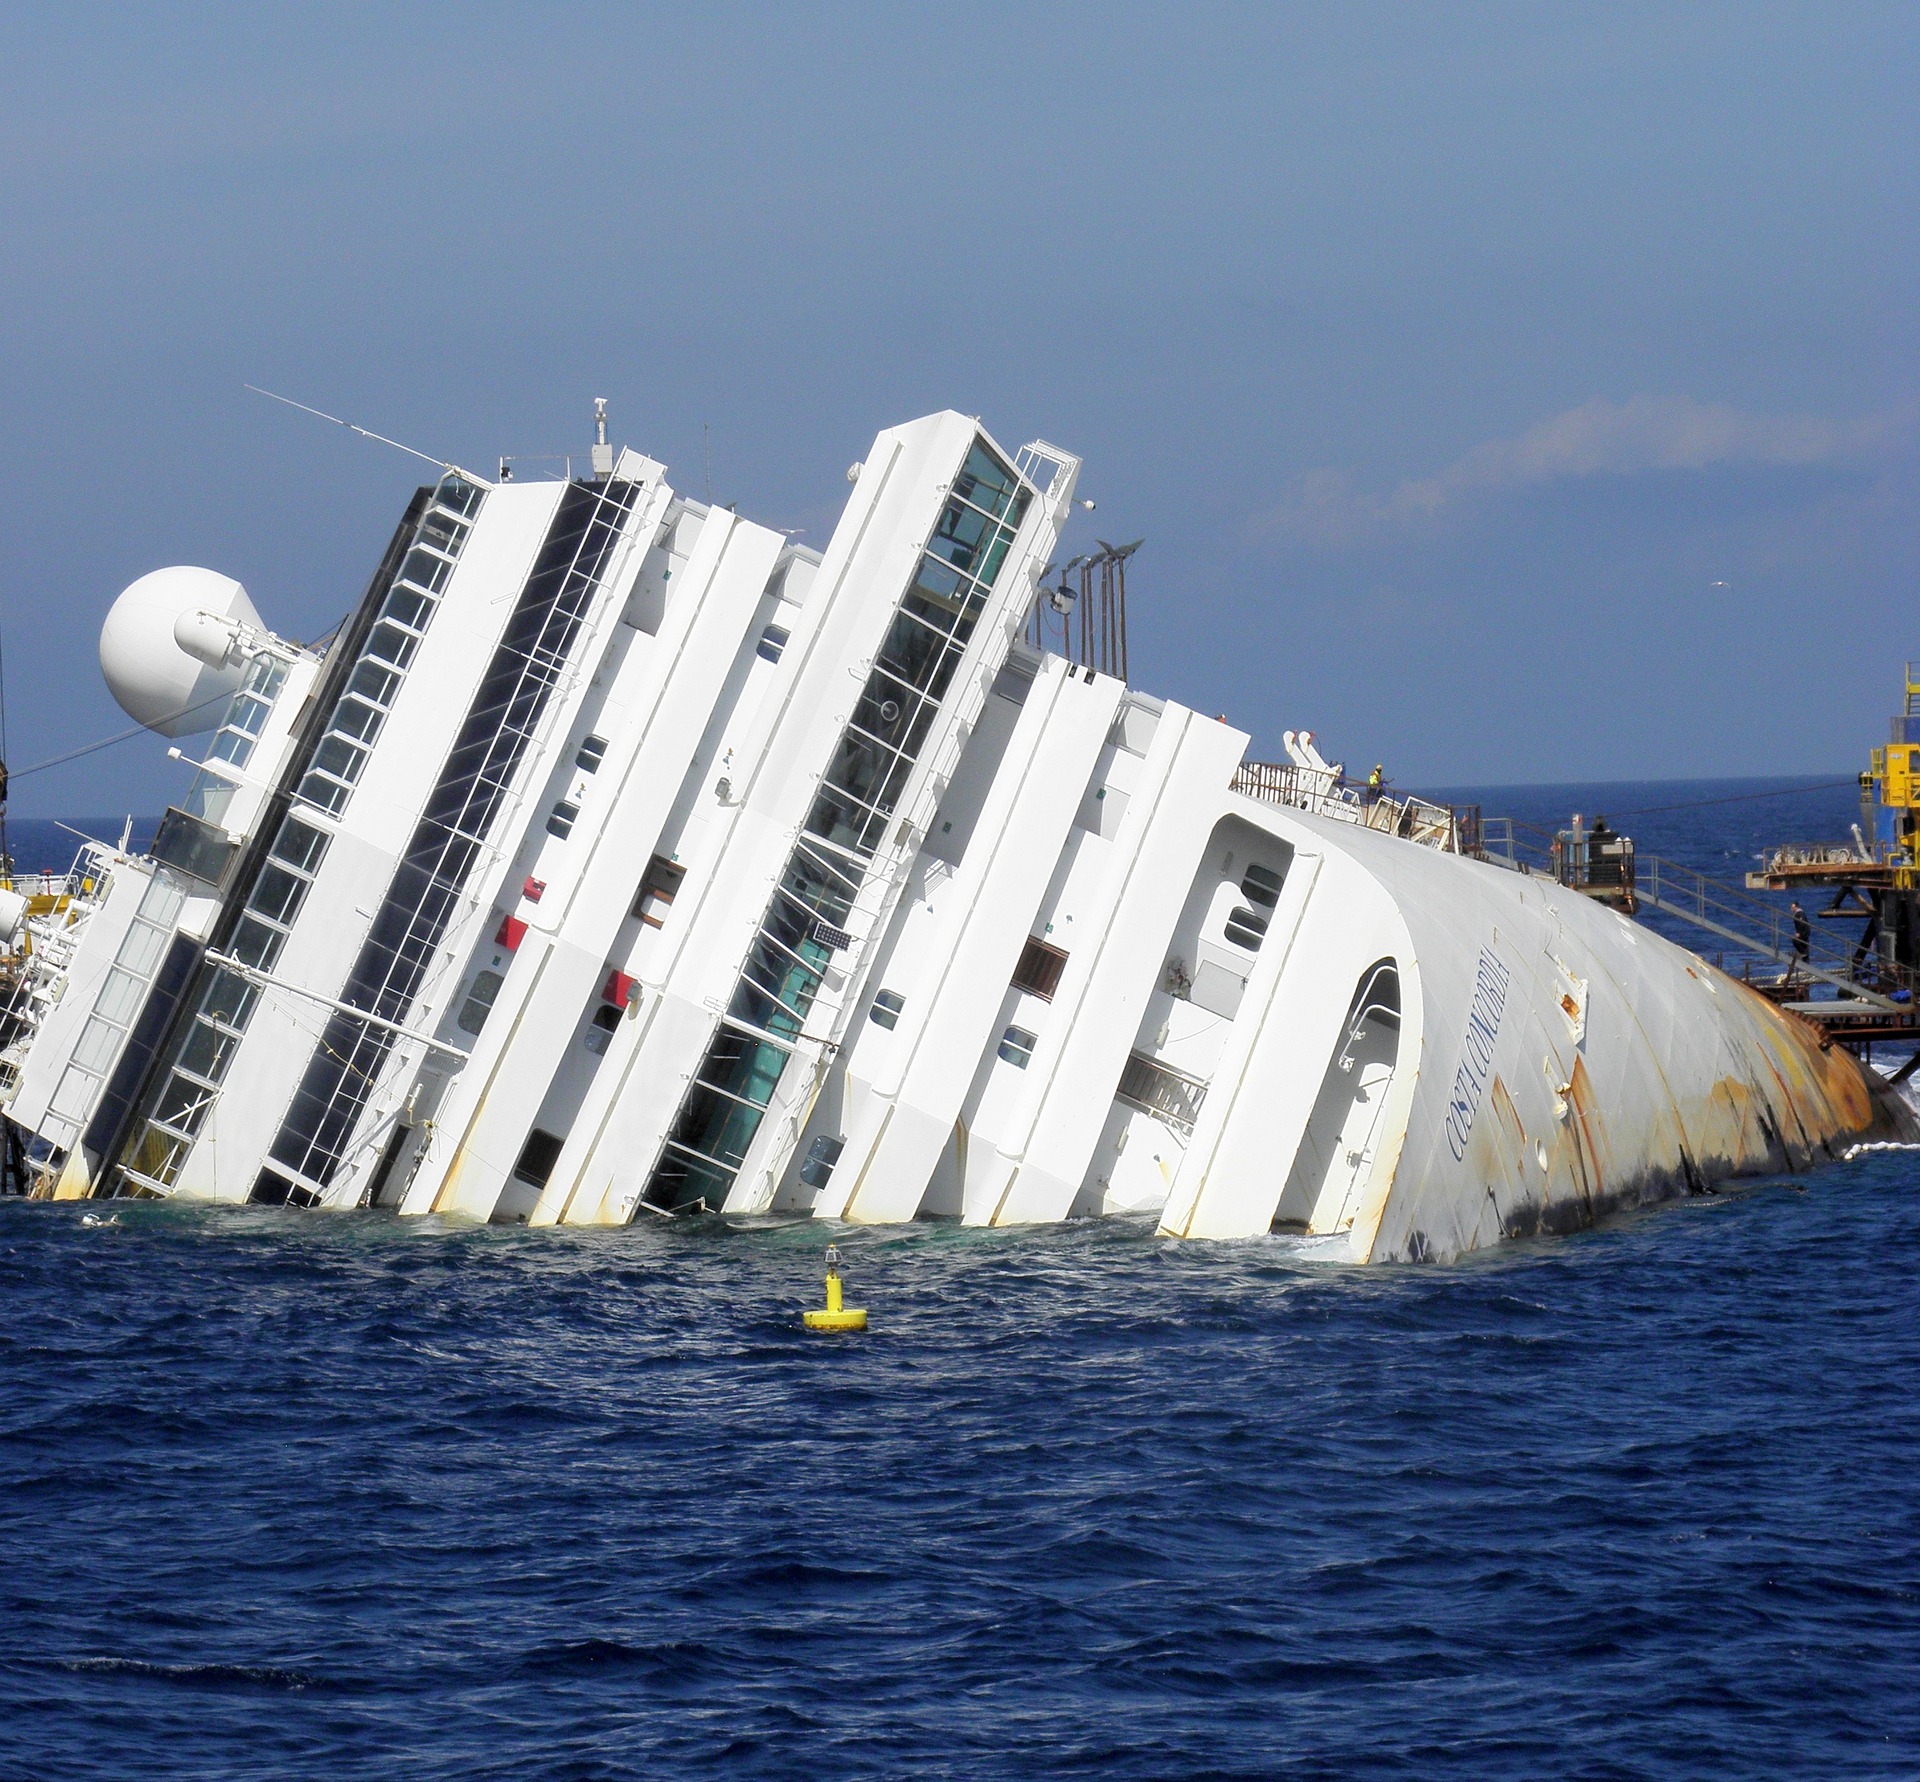 कैसे डूबा इटली का सबसे बड़ा जहाज: इटली के कॉनकॉर्डिया जहाज के डूबने की पूरी कहानी